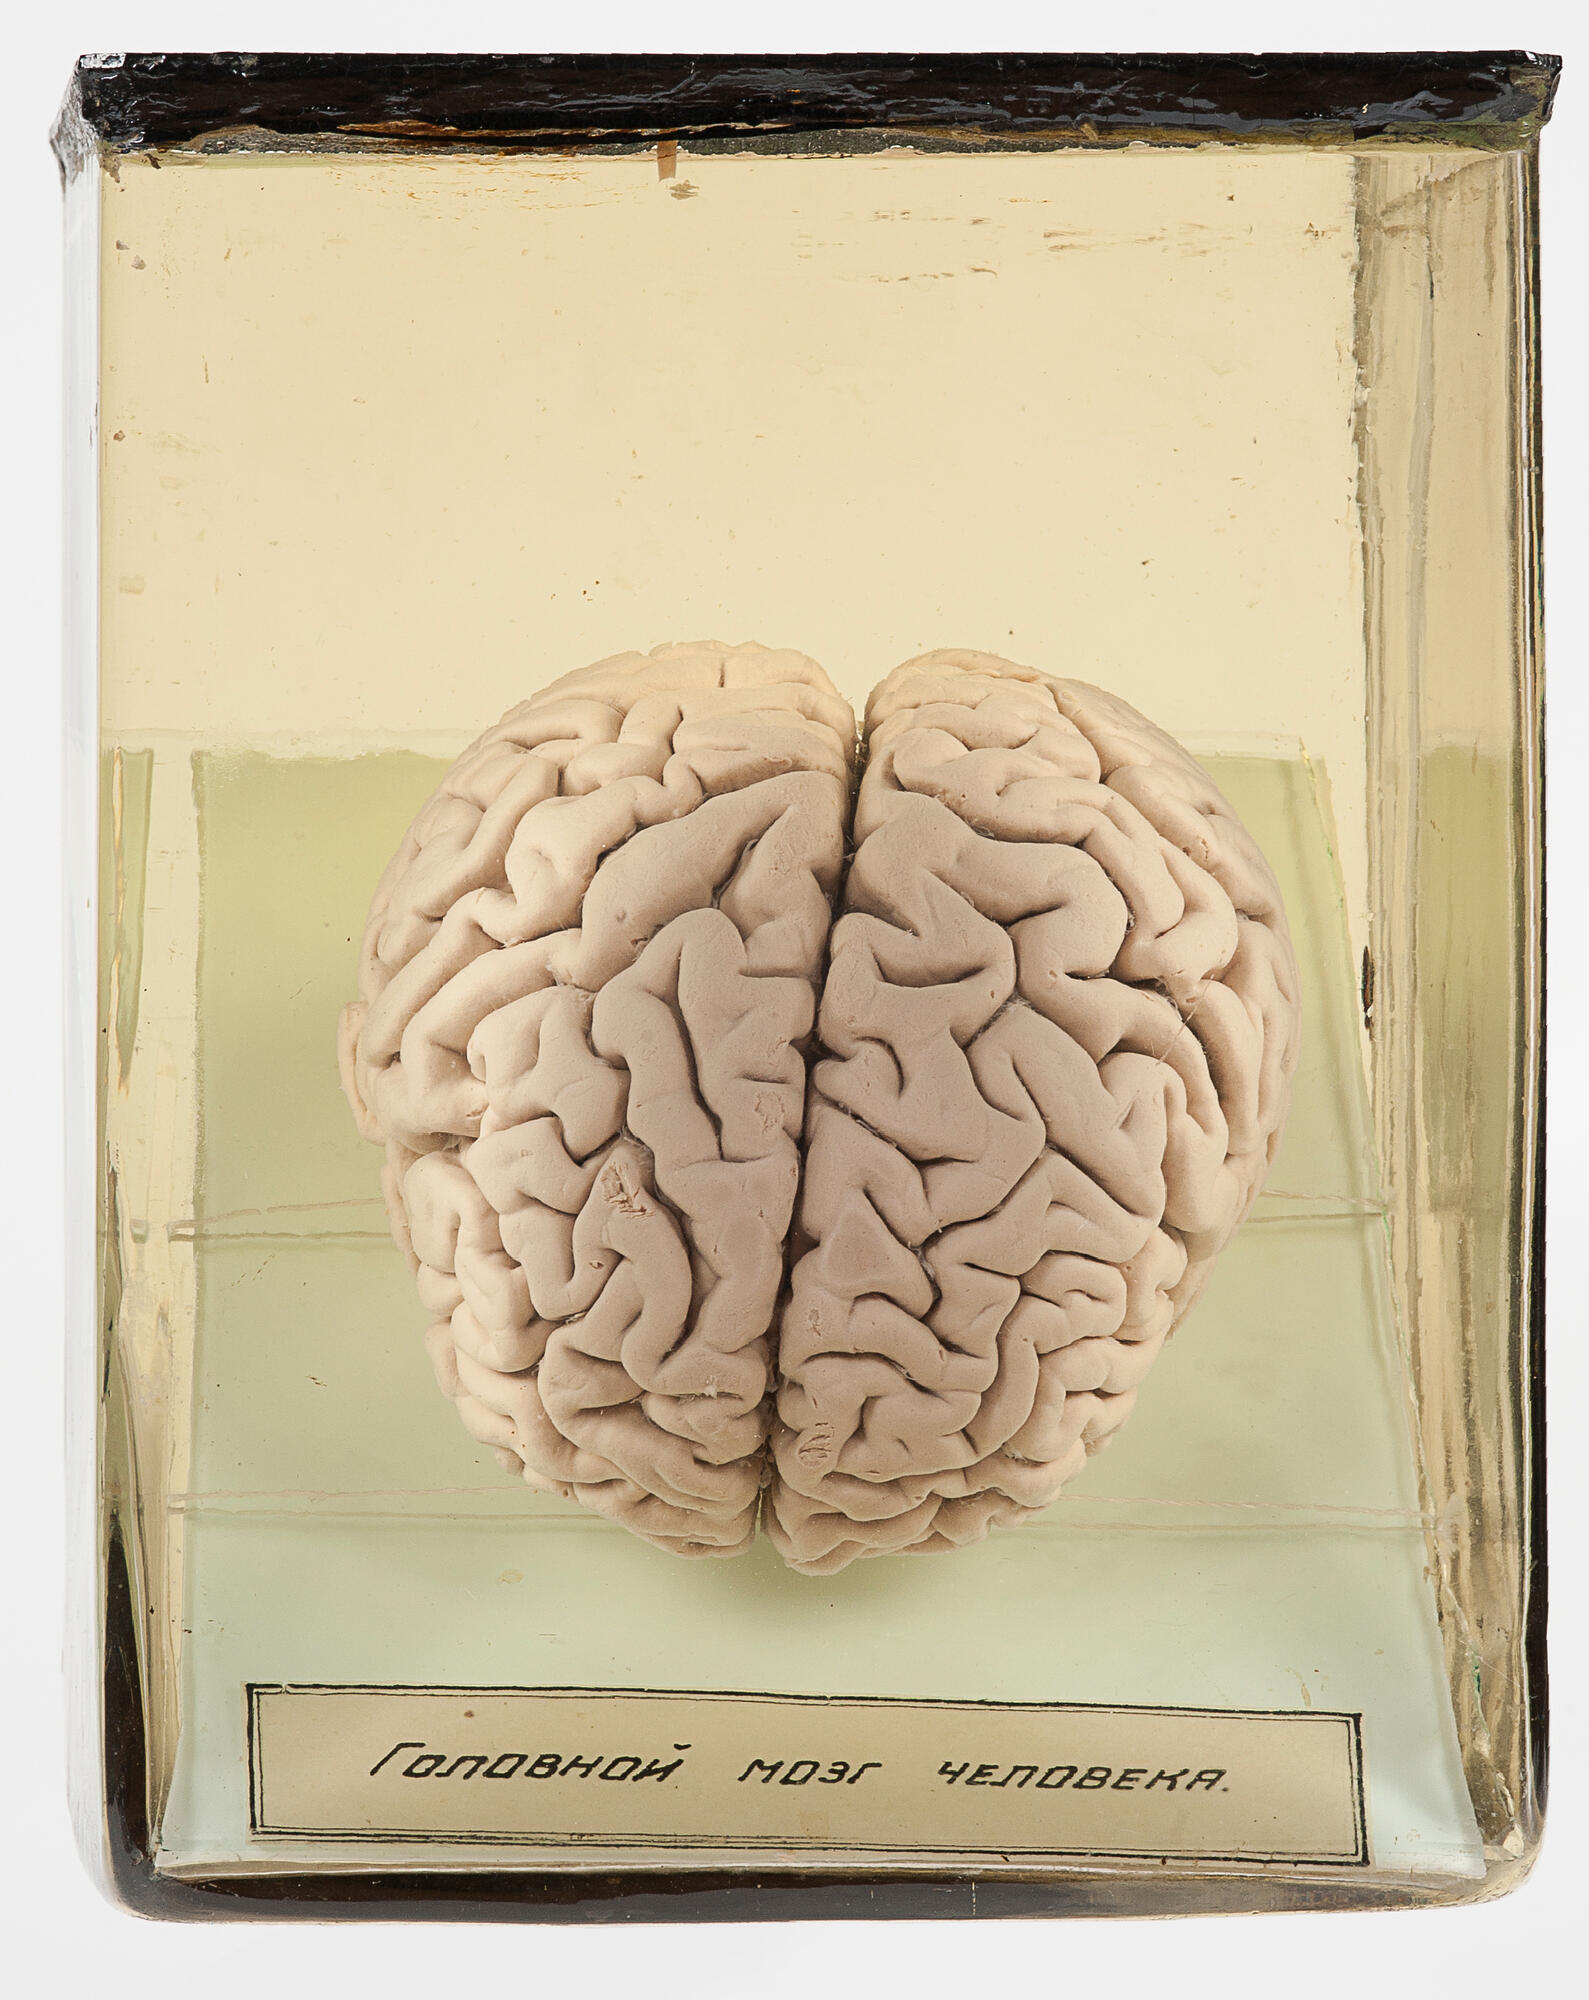 Мозг человека. Подробное описание экспоната, аудиогид, интересные факты.  Официальный сайт Artefact